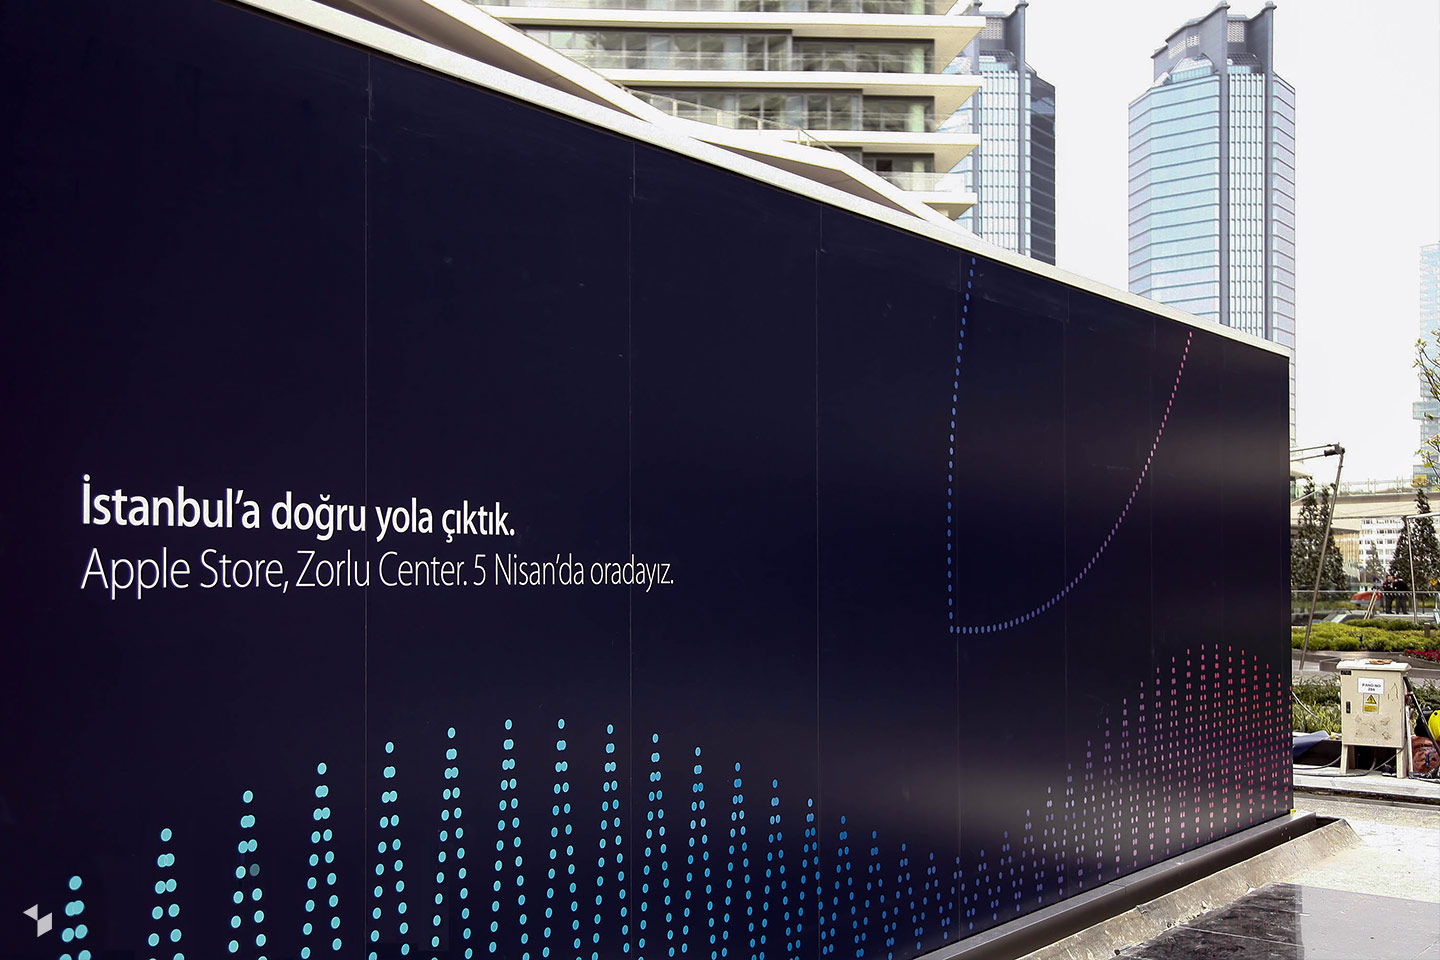 Apple Zorlu Center in Istanbul (Türkei) eröffnete am 05. April 2014